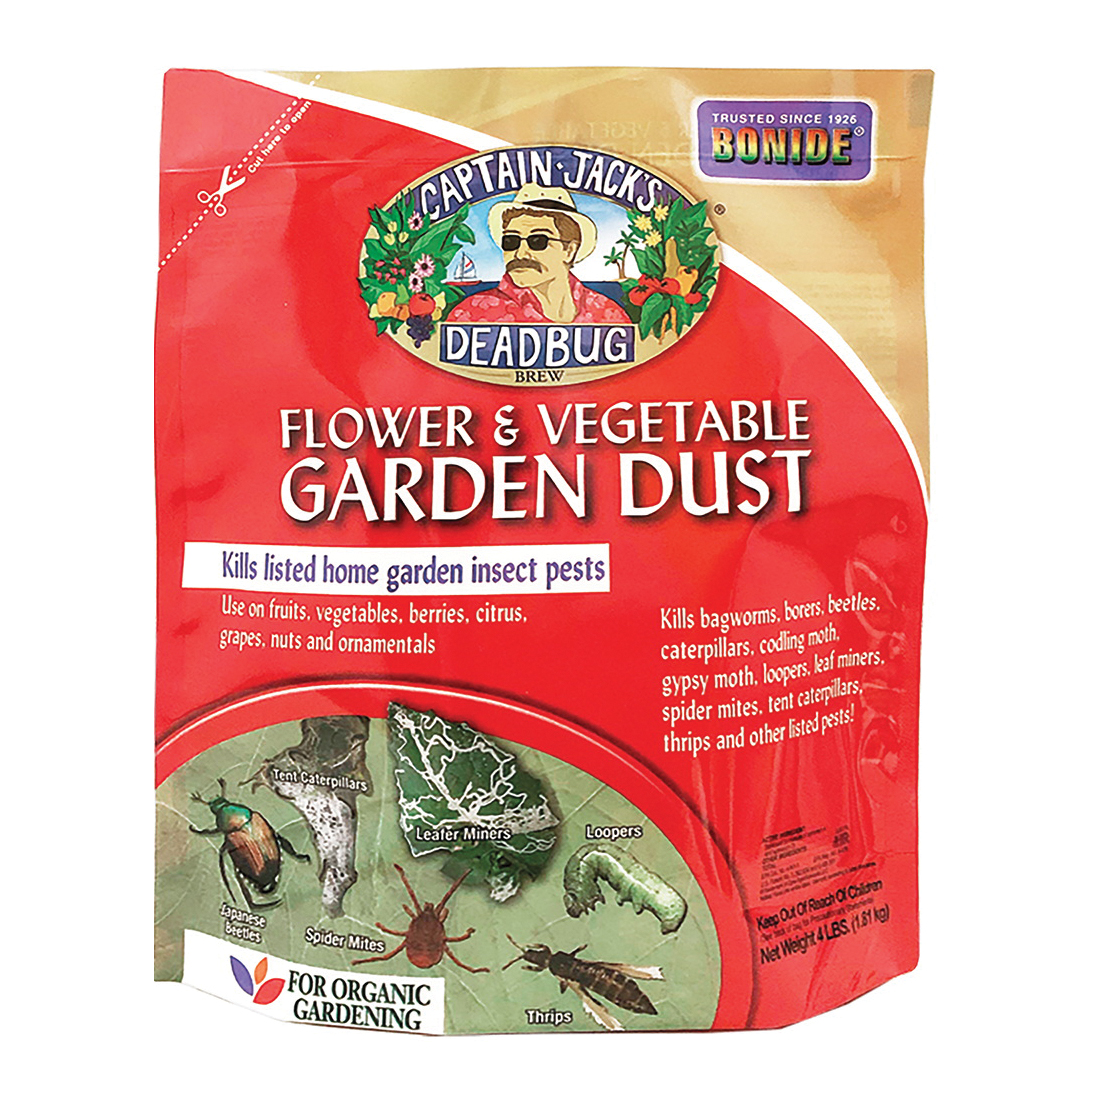 Deadbug Brew 258 Flower/Vegetable Garden Dust, Solid, 4 lb Bag